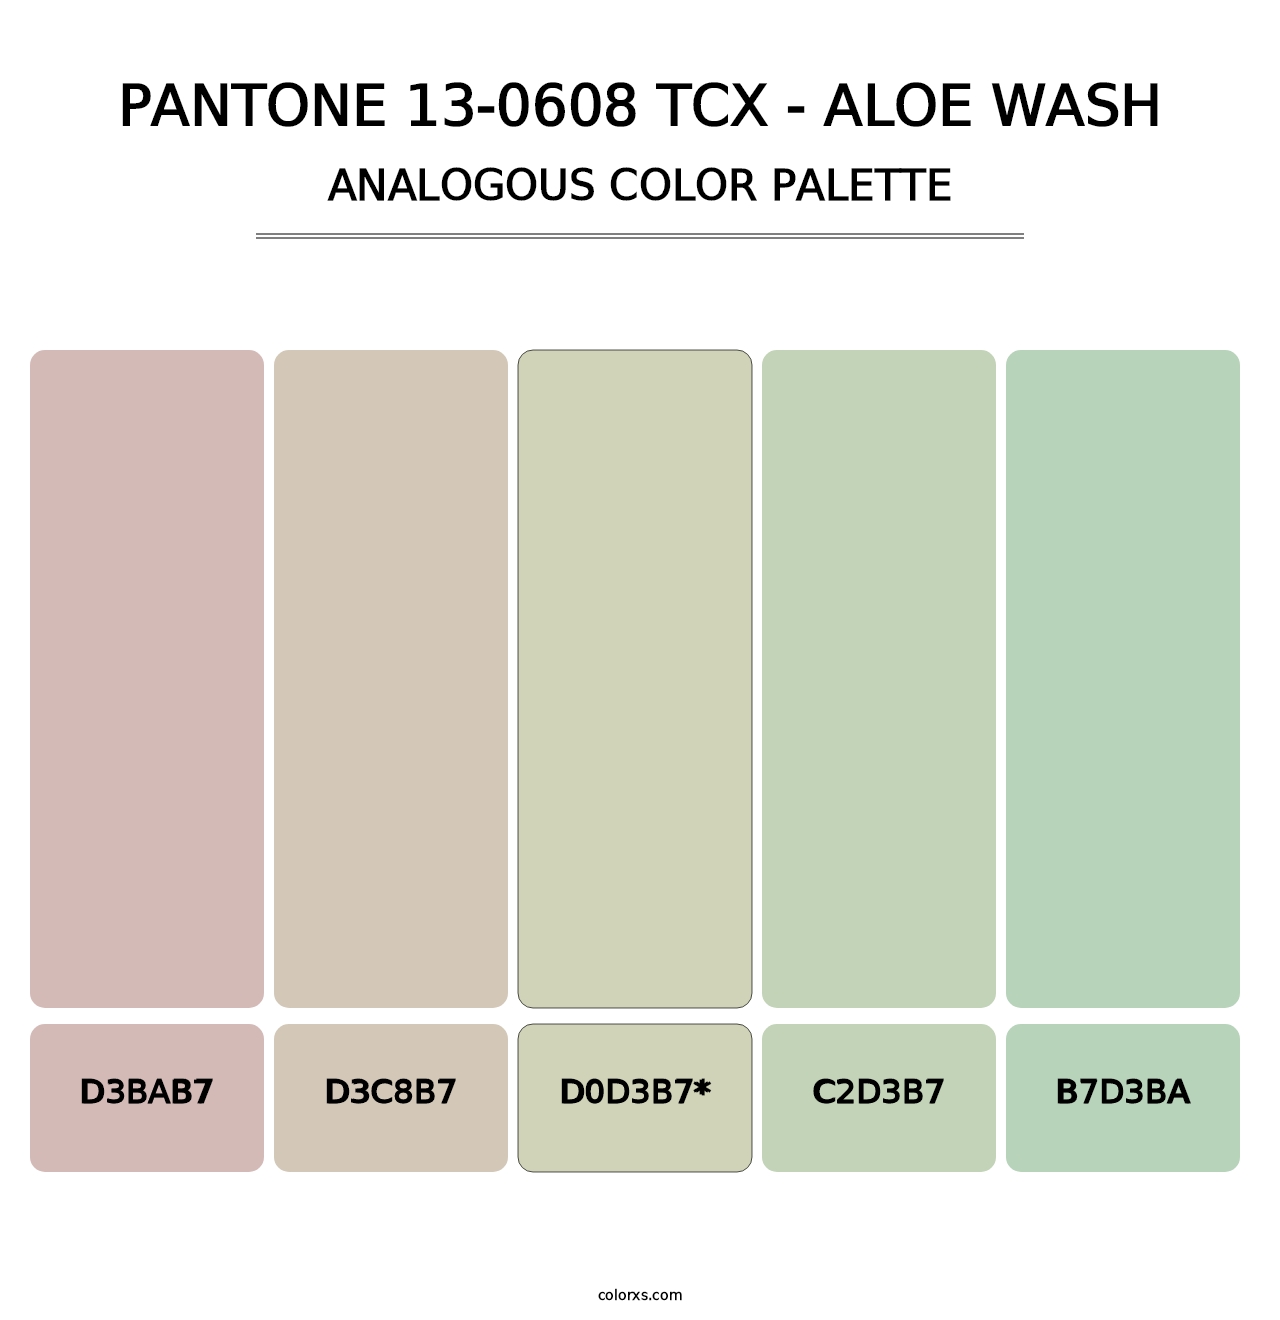 PANTONE 13-0608 TCX - Aloe Wash - Analogous Color Palette